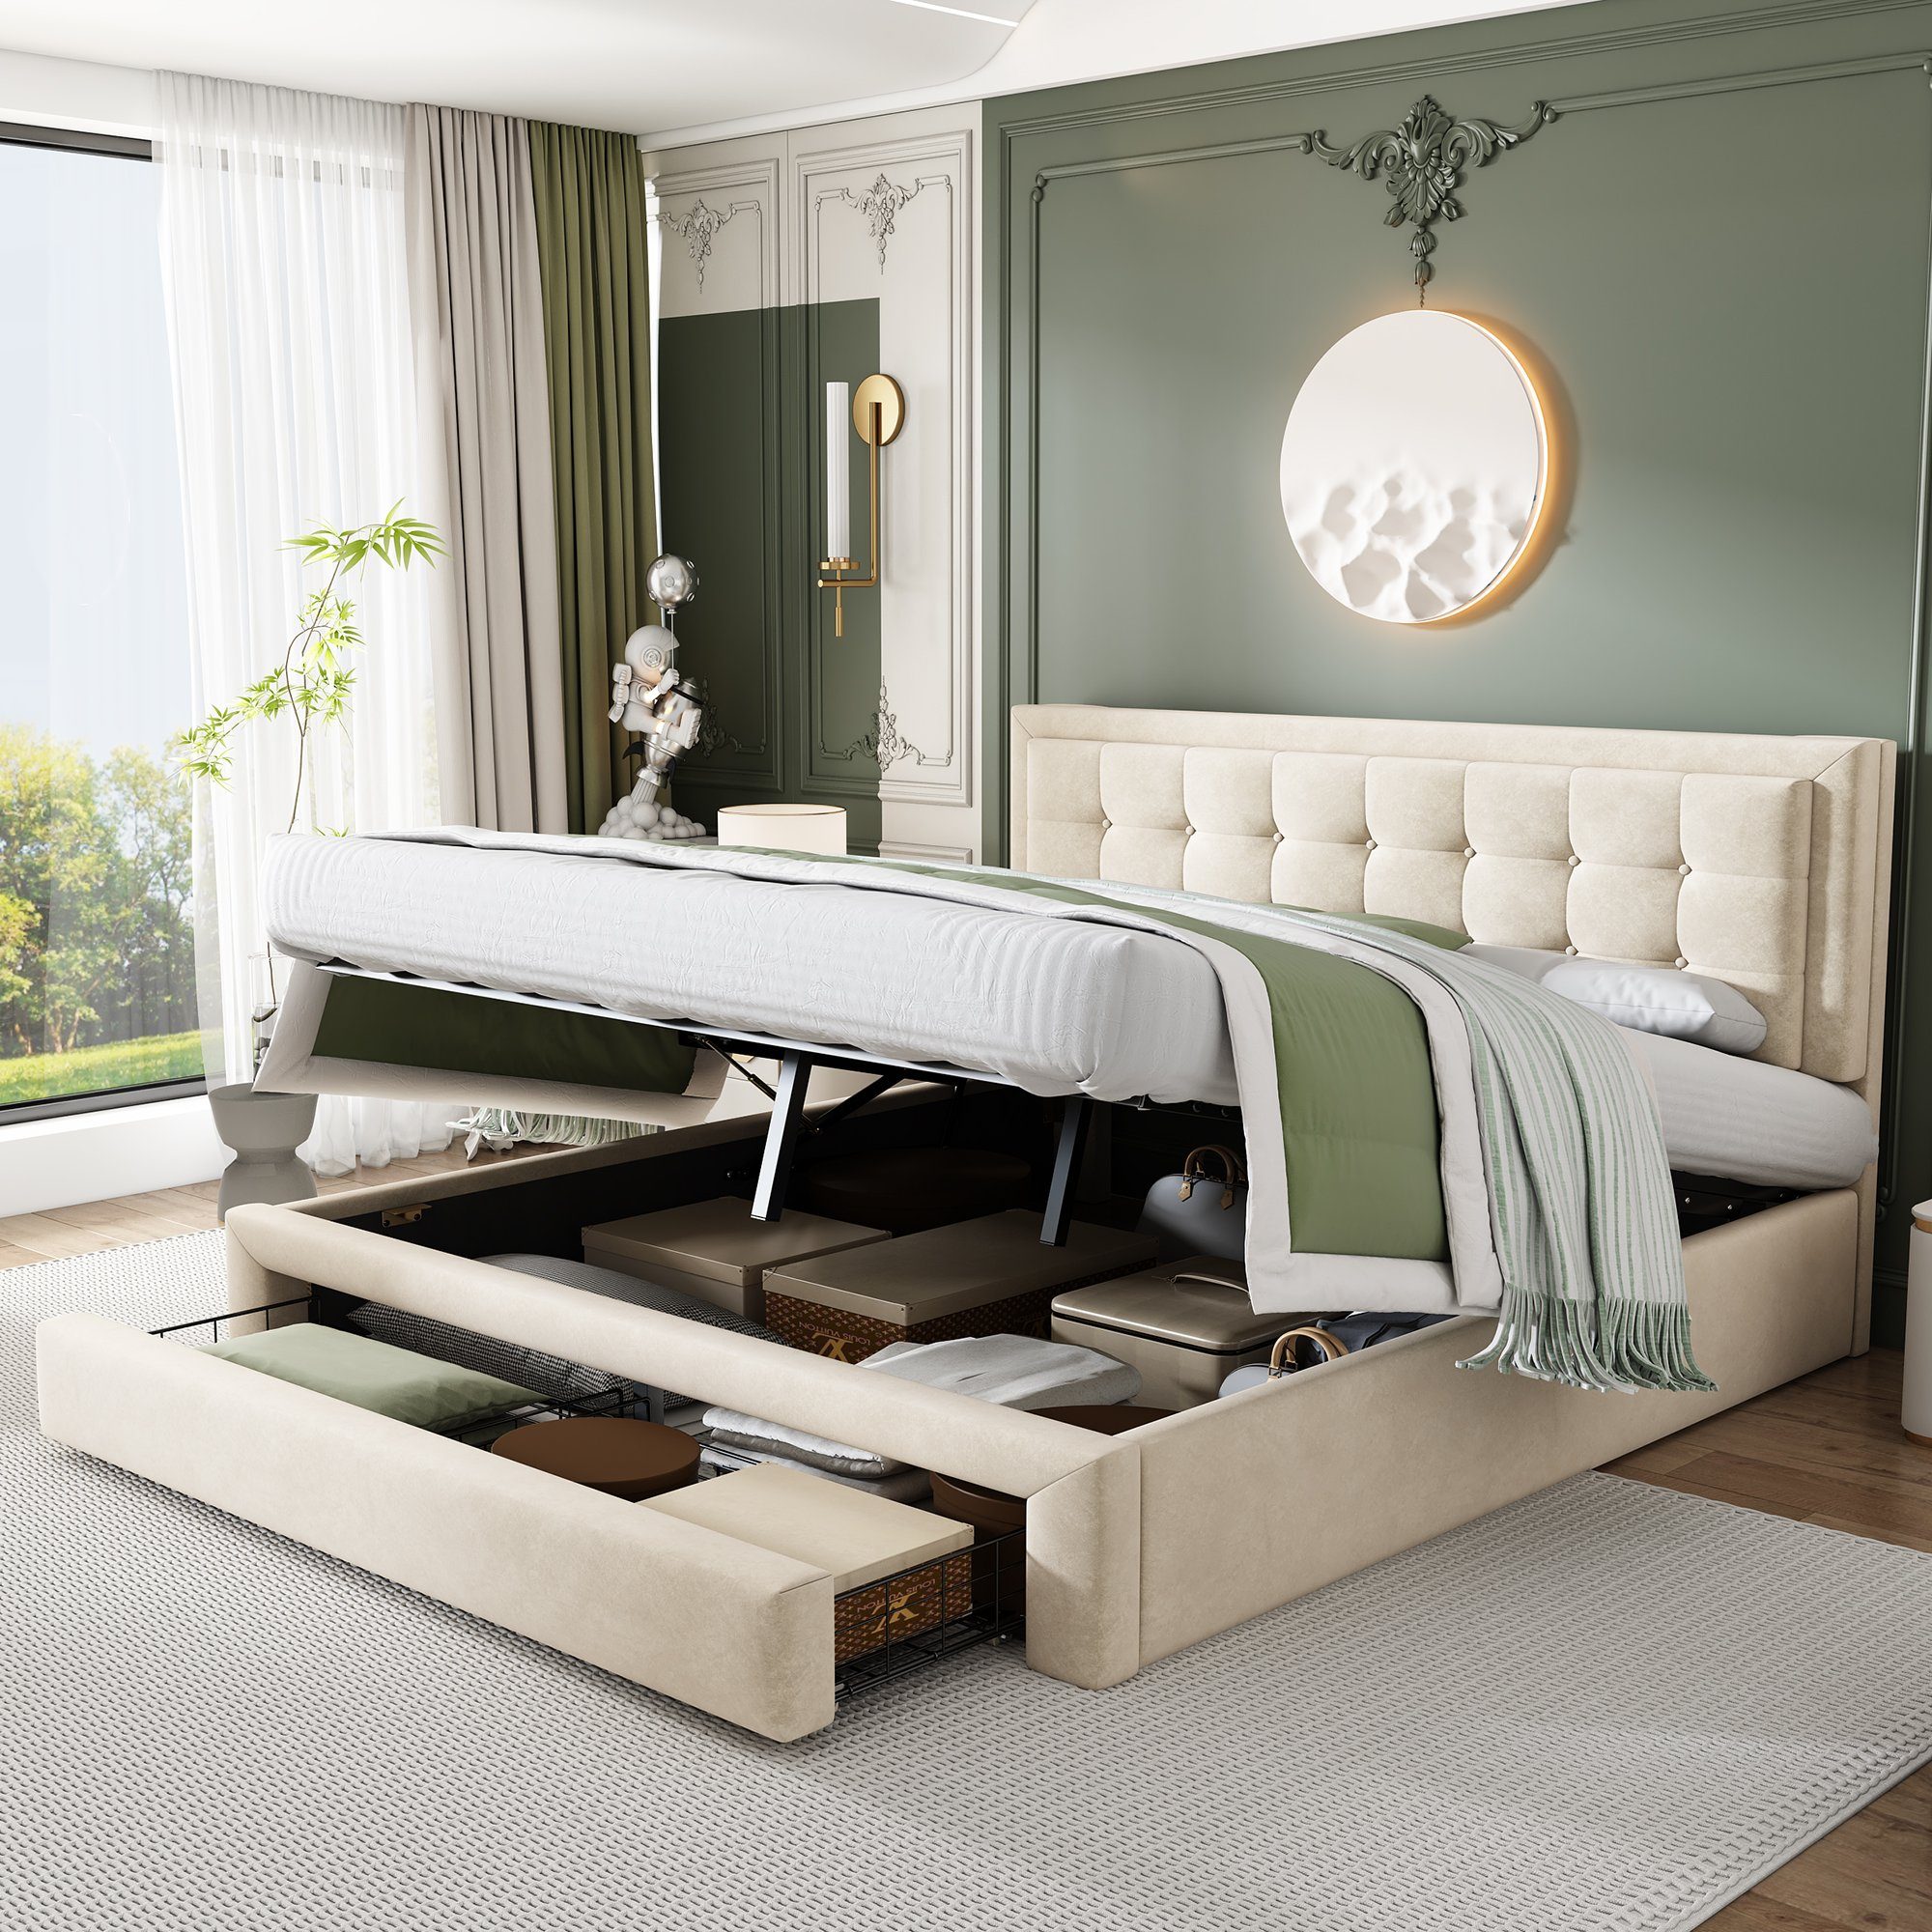 SOFTWEARY Polsterbett Doppelbett mit Lattenrost, Bettkasten und Schubladen (180x200 cm), Kopfteil höhenverstellbar, Samt beige